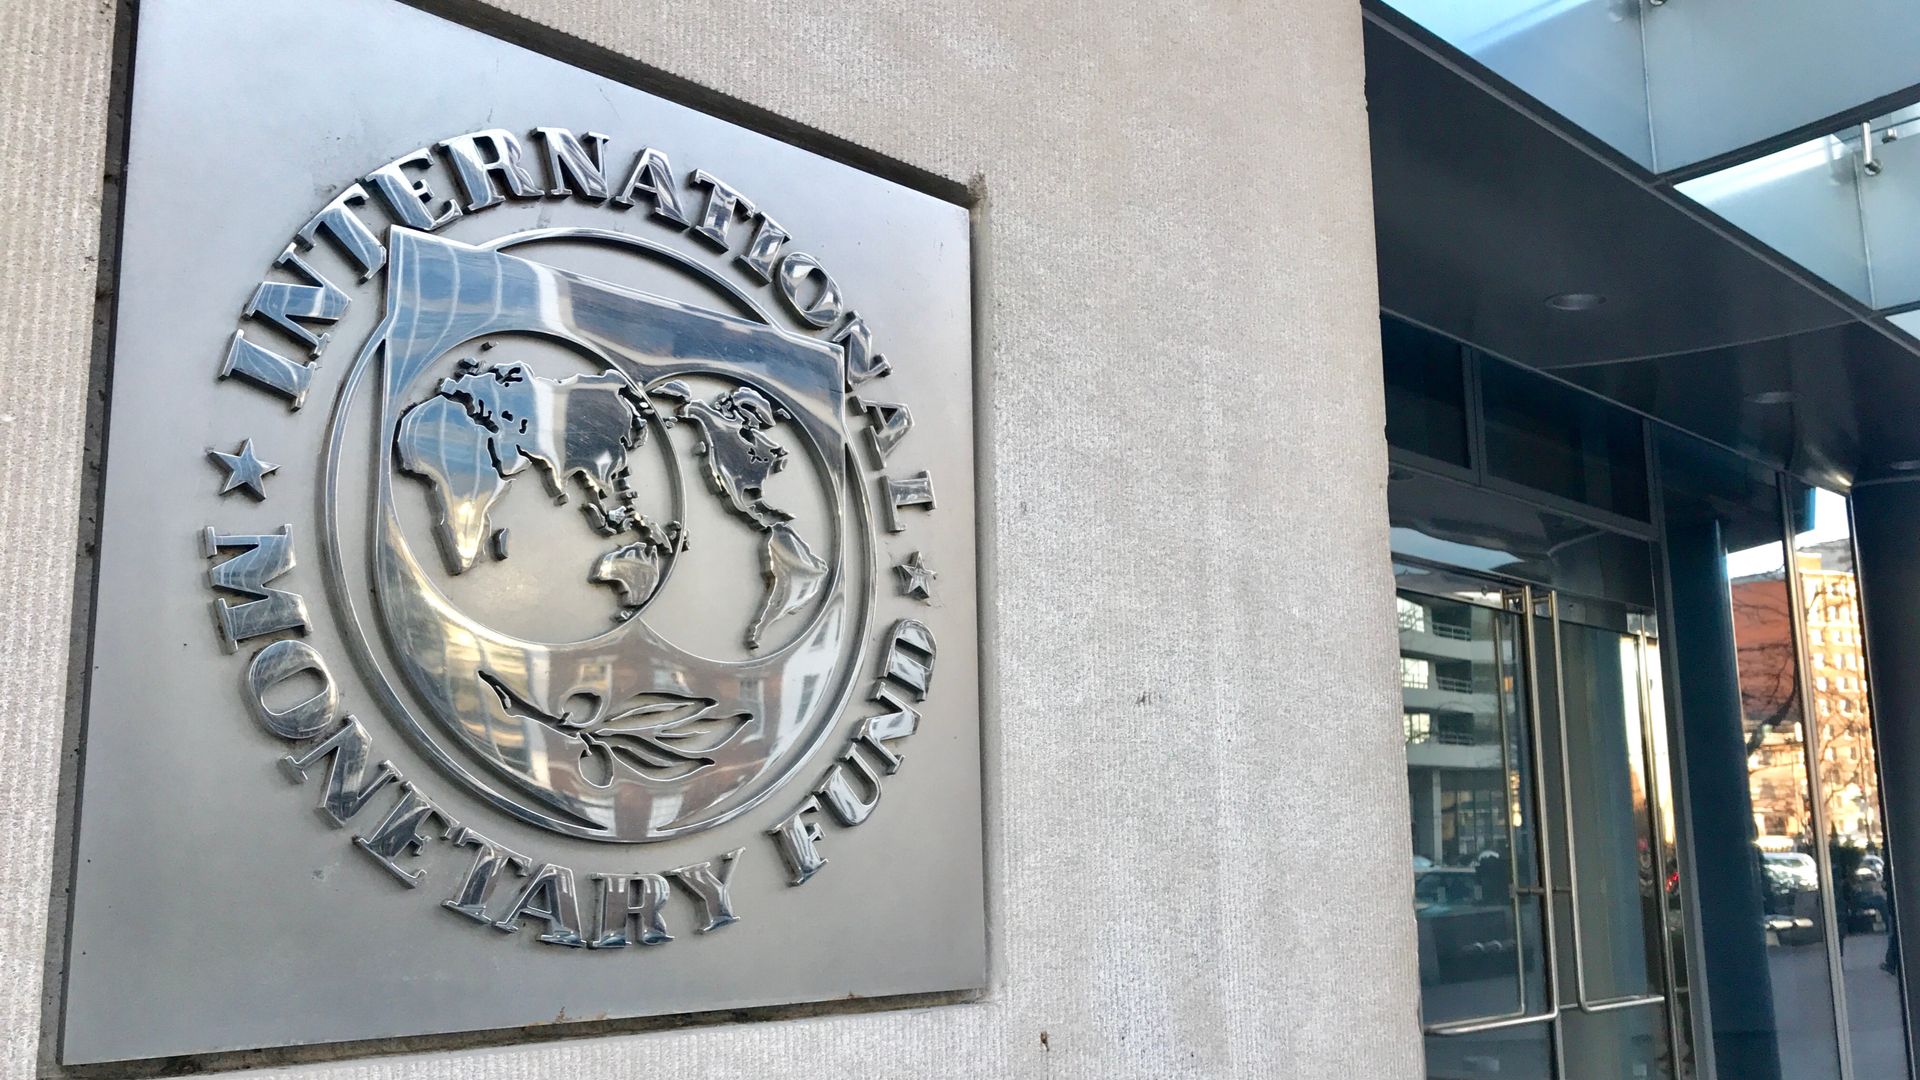 FMI: Problemas em corretoras de criptomoedas impulsionam regulação